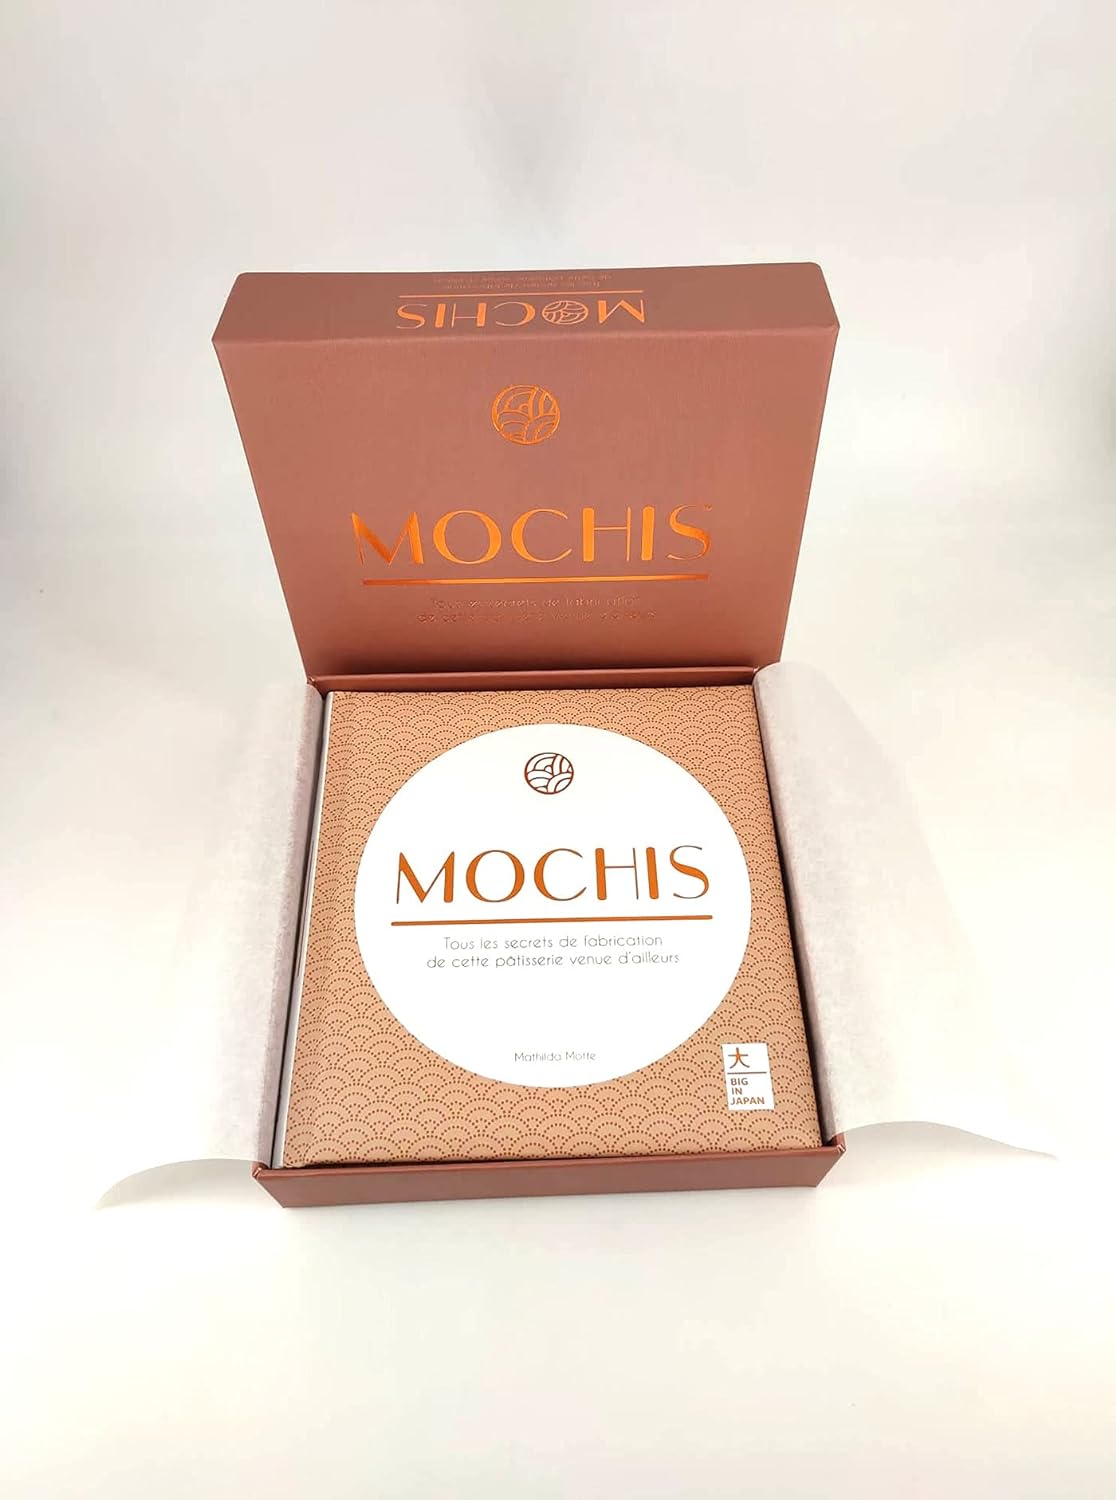 Mochis: Tous Les Secrets de Fabrication de Cette Patisserie Venue D'Ailleurs (Mathilda Motte)